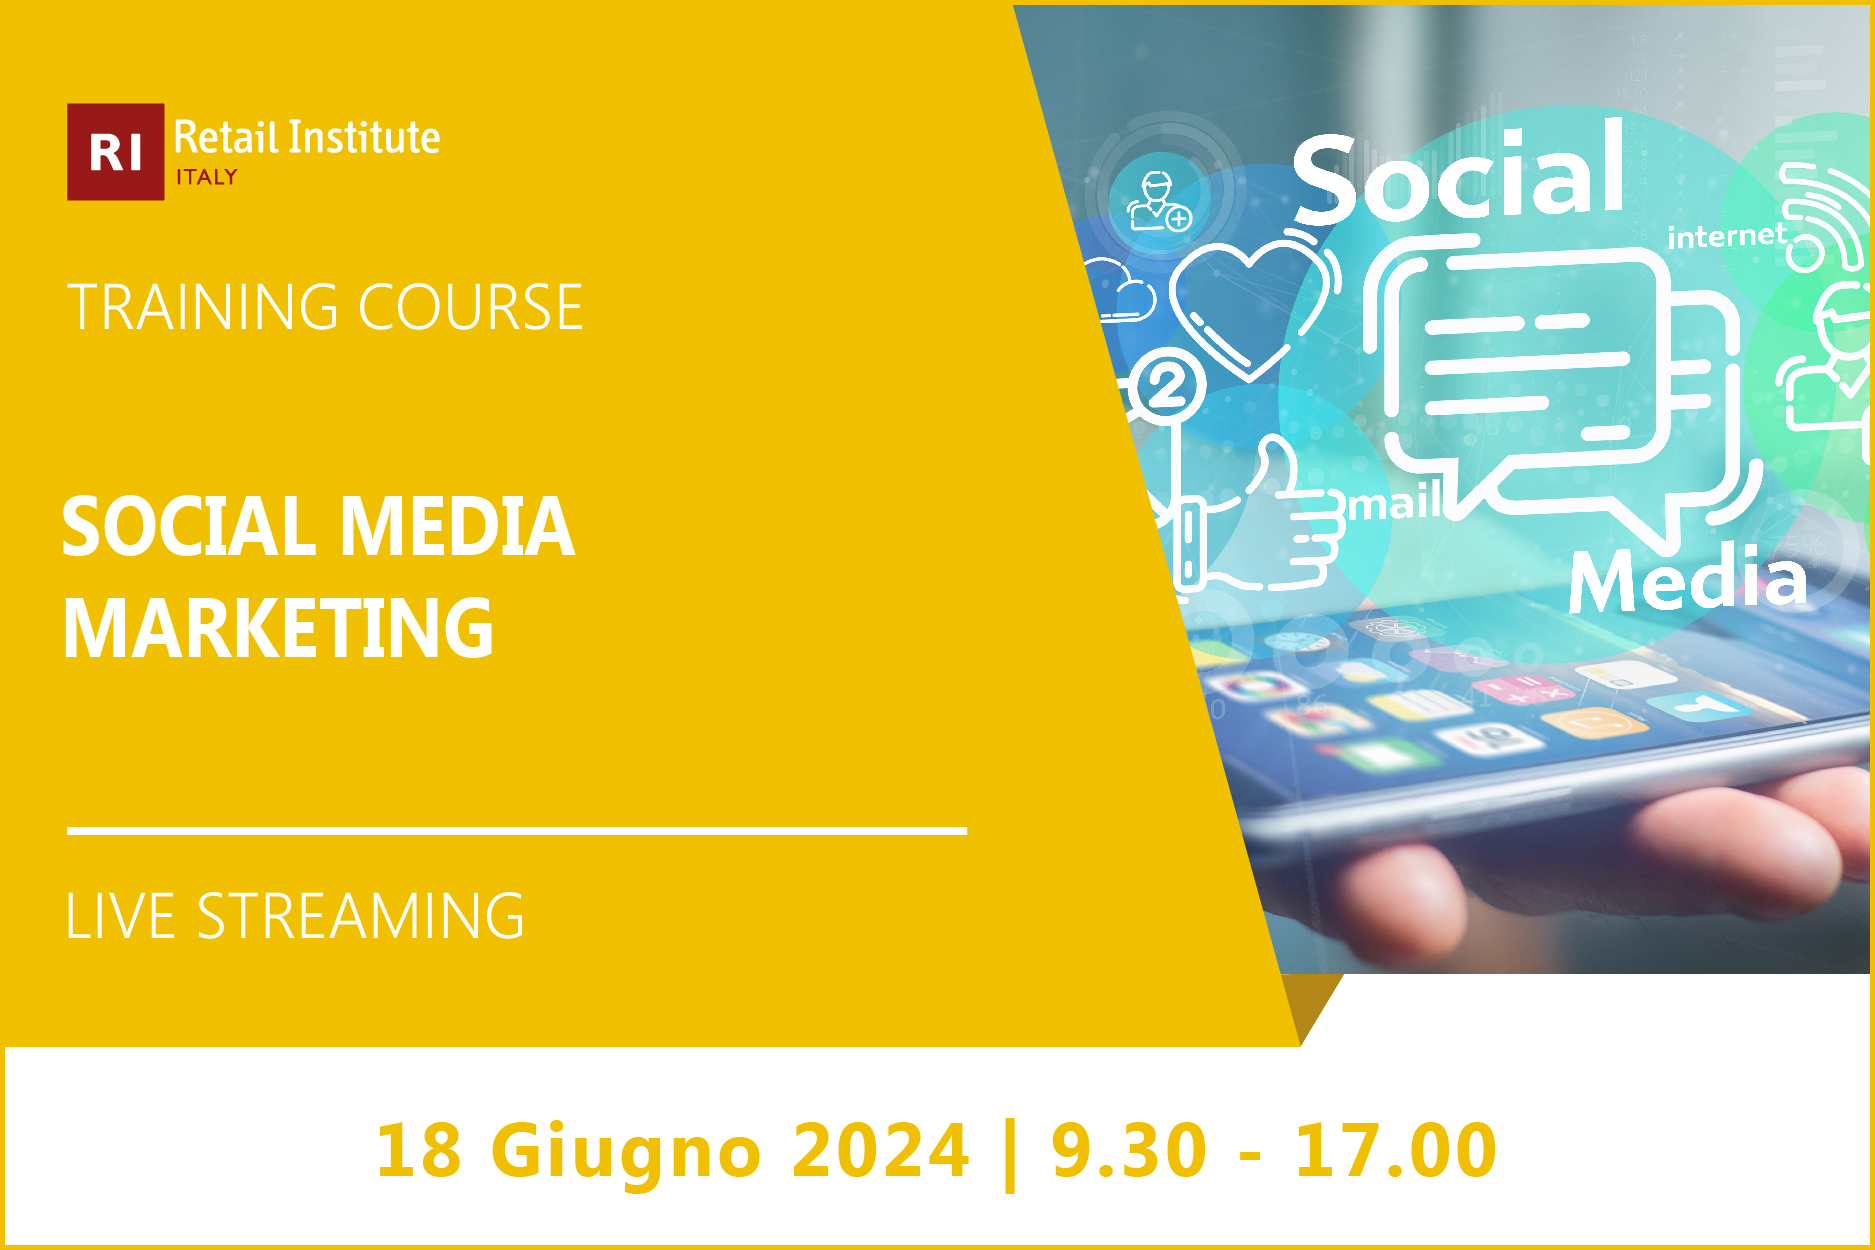 Training Course “Social Media Marketing” – 18 giugno 2024